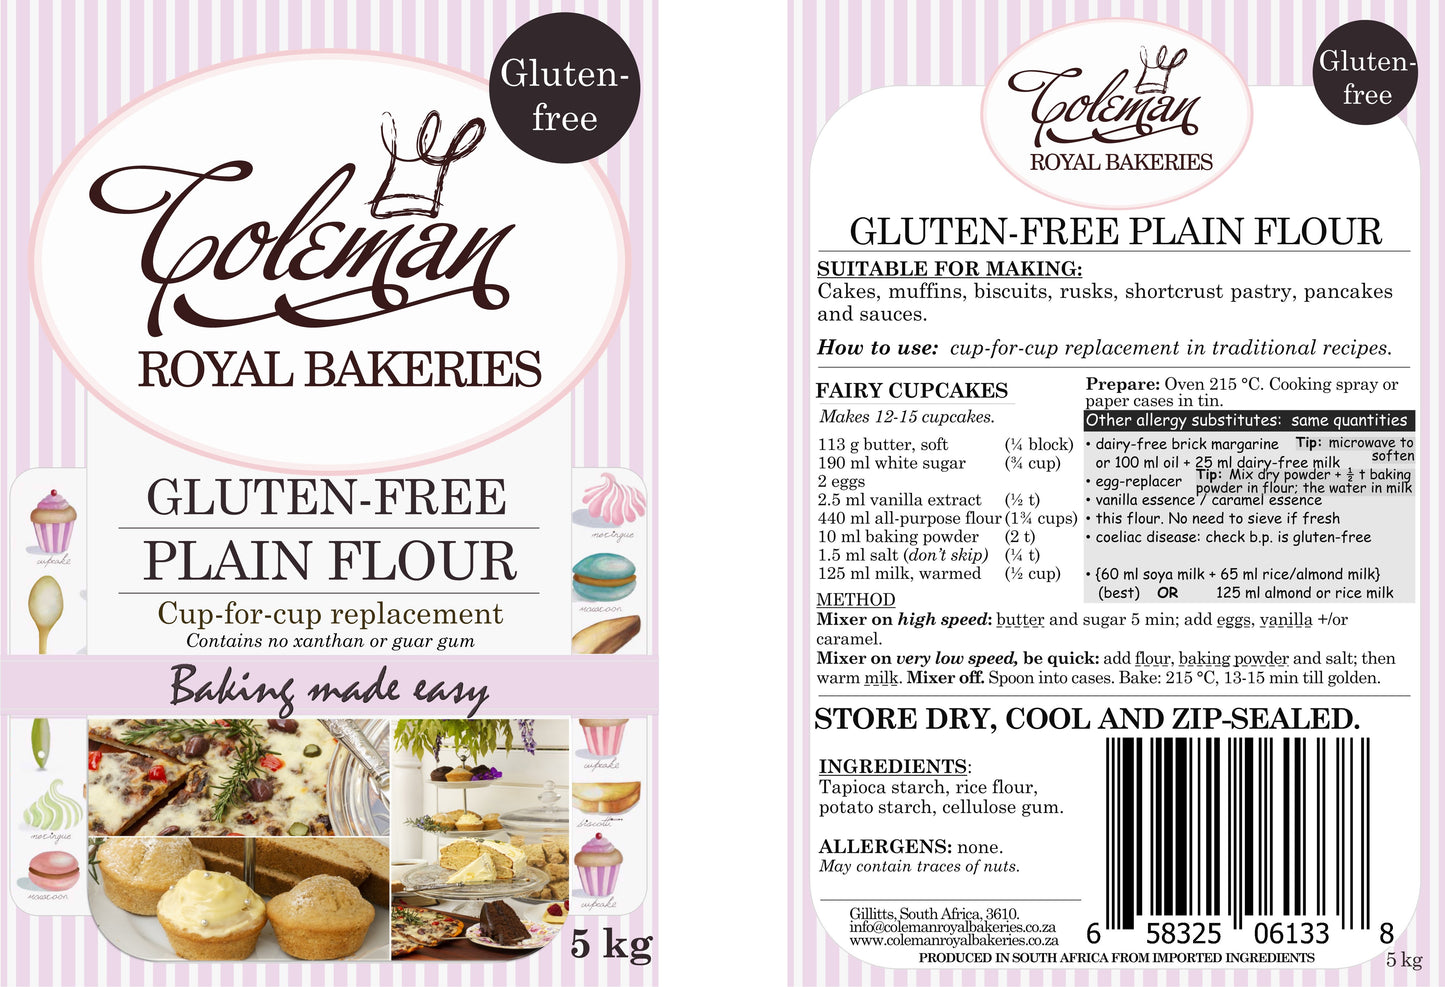 Gluten-free Plain Flour 5 kg - Coleman Royal Bakeries